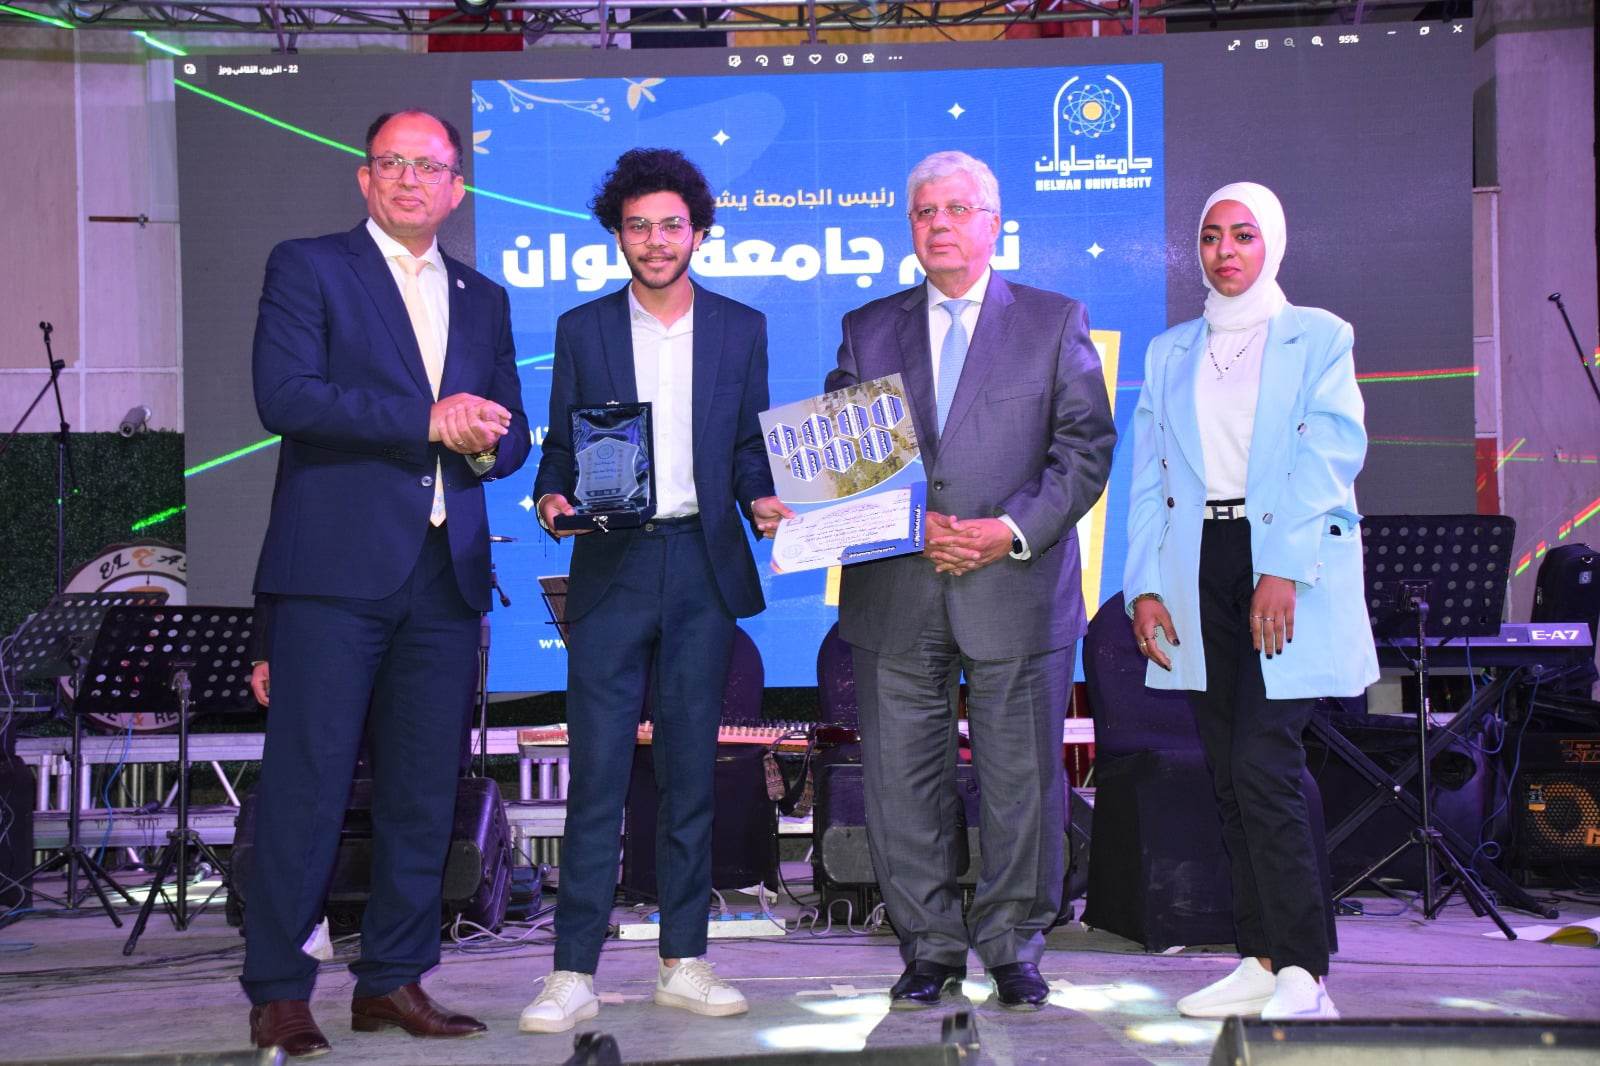 وزير التعليم العالي يشهد فعاليات تكريم الفائزين في مسابقة "أنت النجم" بجامعة حلوان